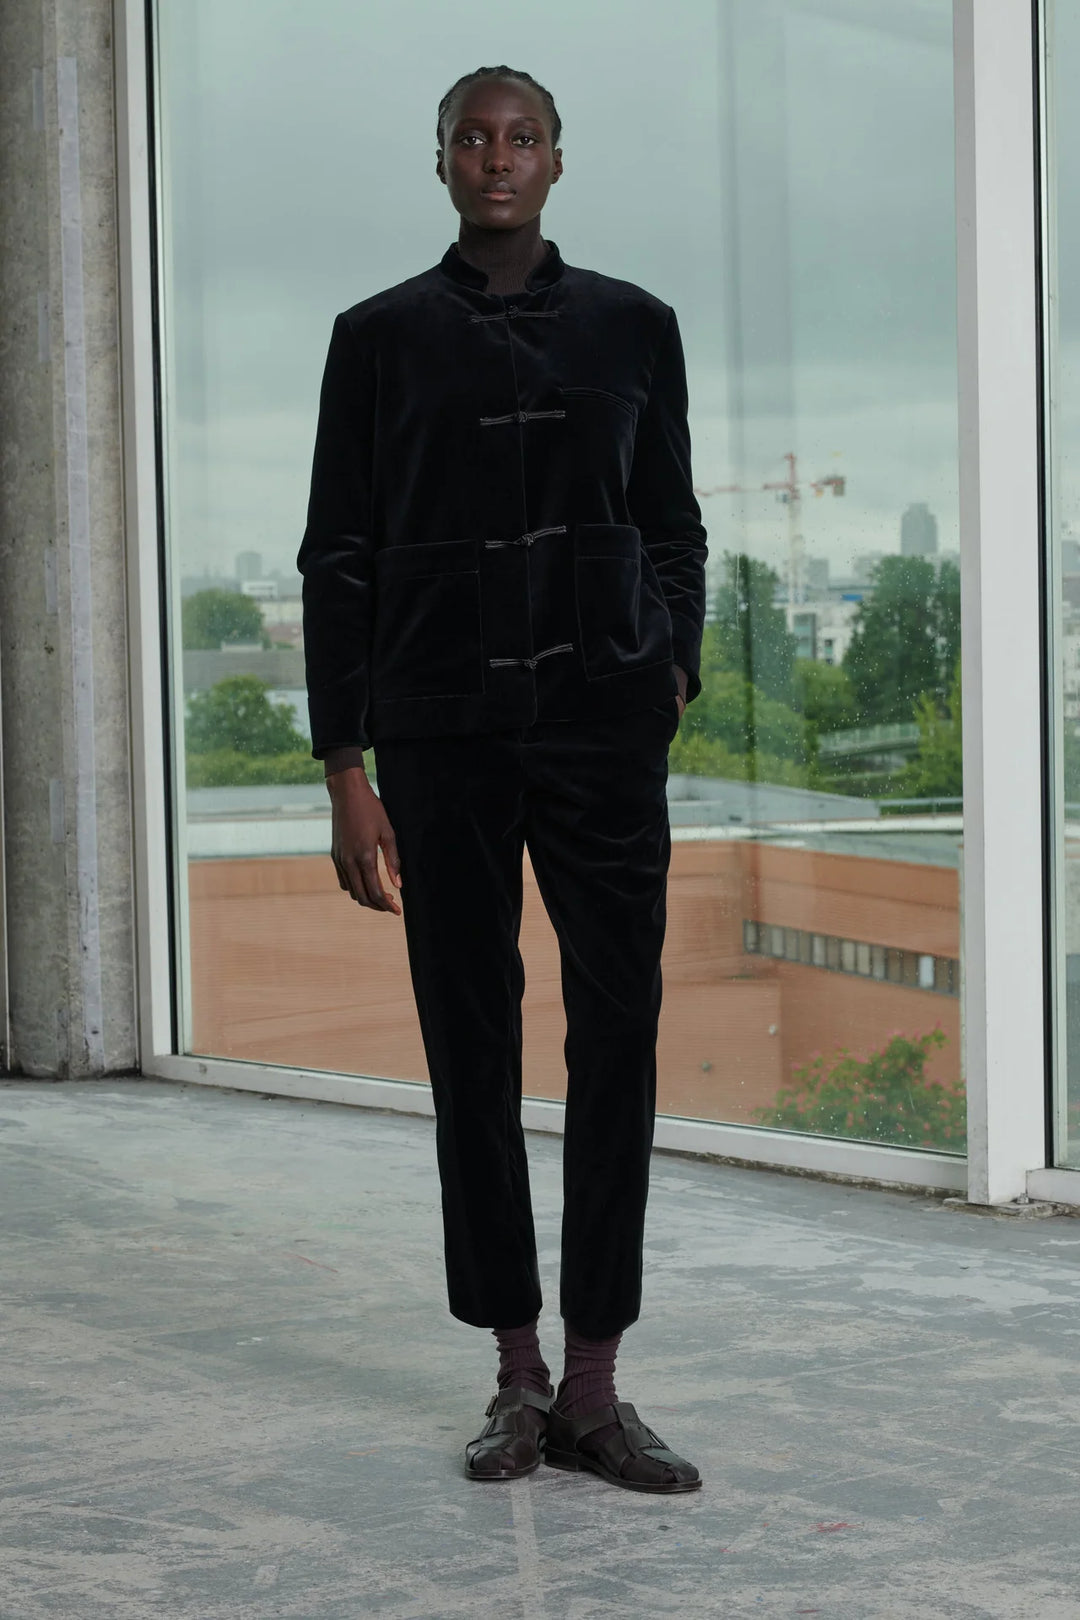 Soeur – Vianney Velvet Trousers in Noir